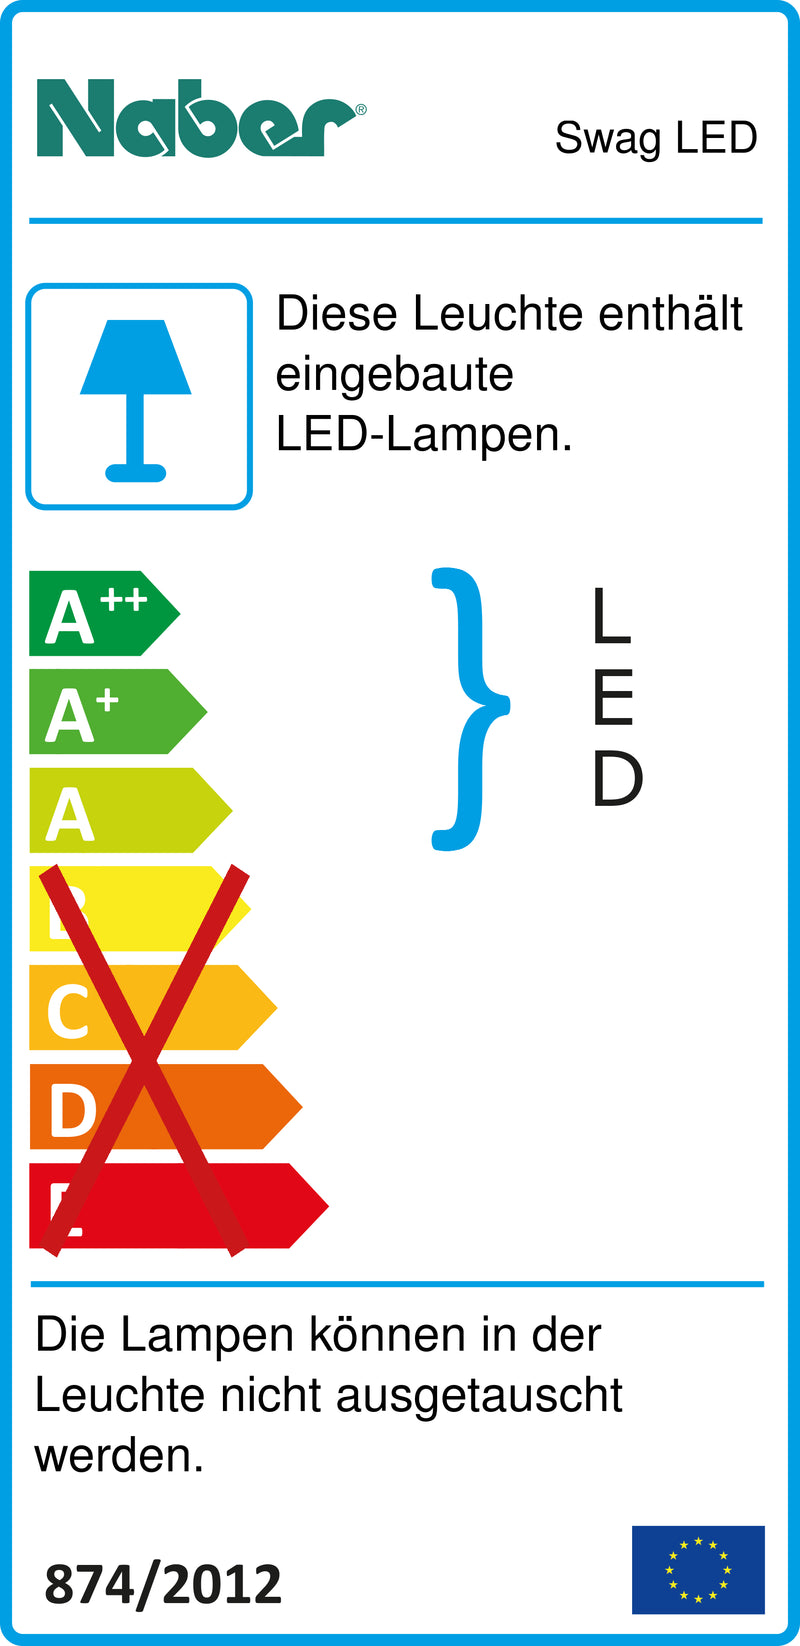 E-Label zu Zeichnung zu Swag LED als Variante Set-2, 4000 K neutralweiß von Naber GmbH in der Kategorie Lichttechnik in Österreich auf conceptshop.at